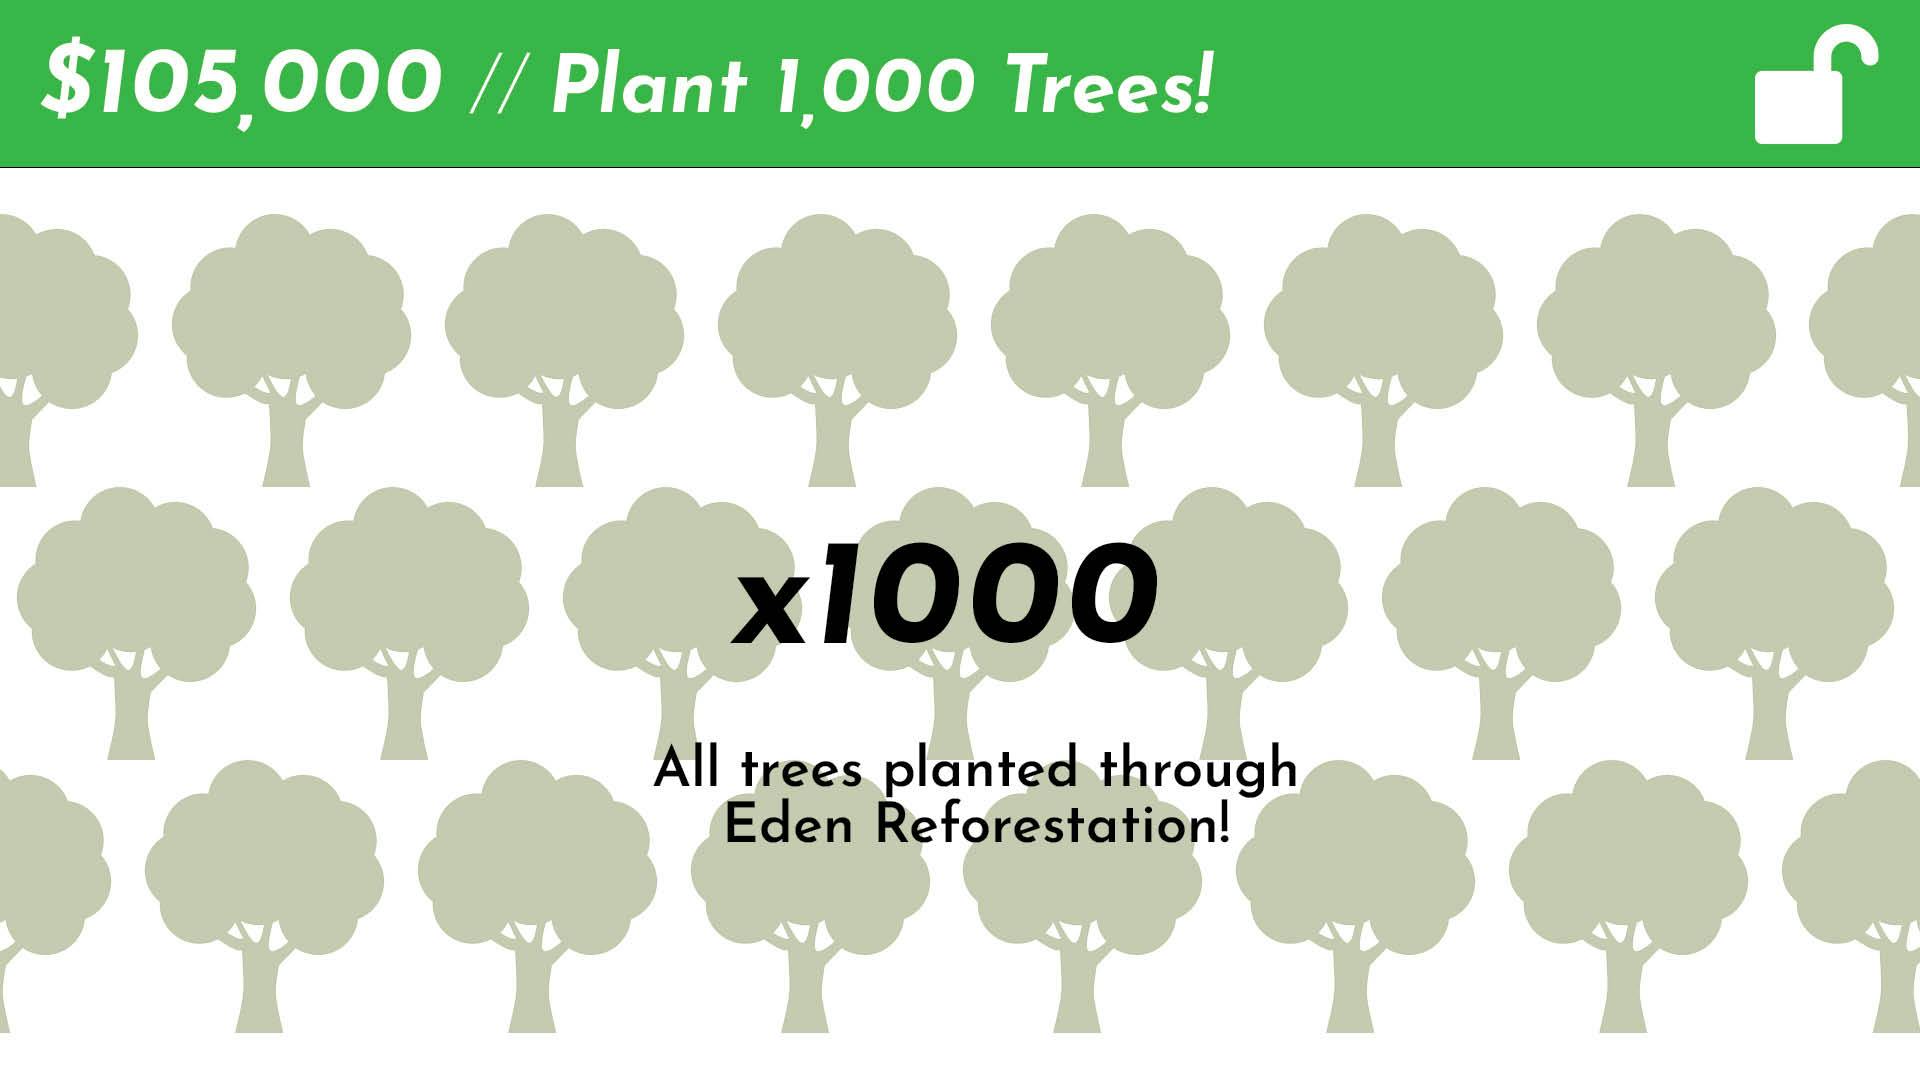 Plant 1,000 Trees